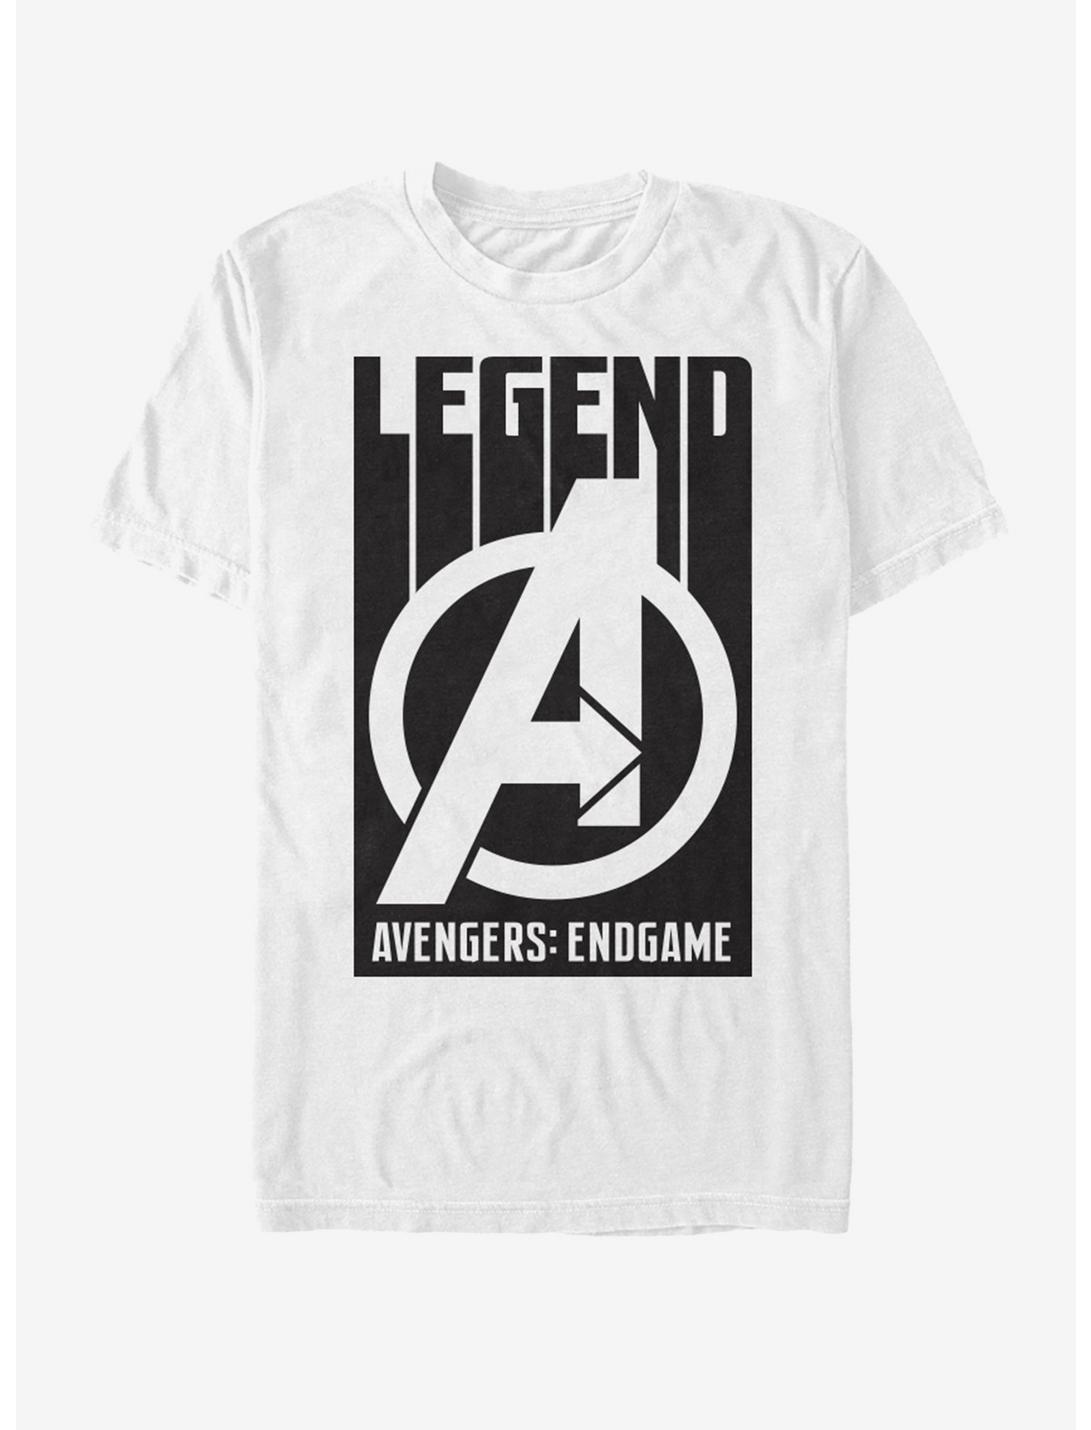 Marvel Avengers: Endgame Avengers Legends T-Shirt, WHITE, hi-res